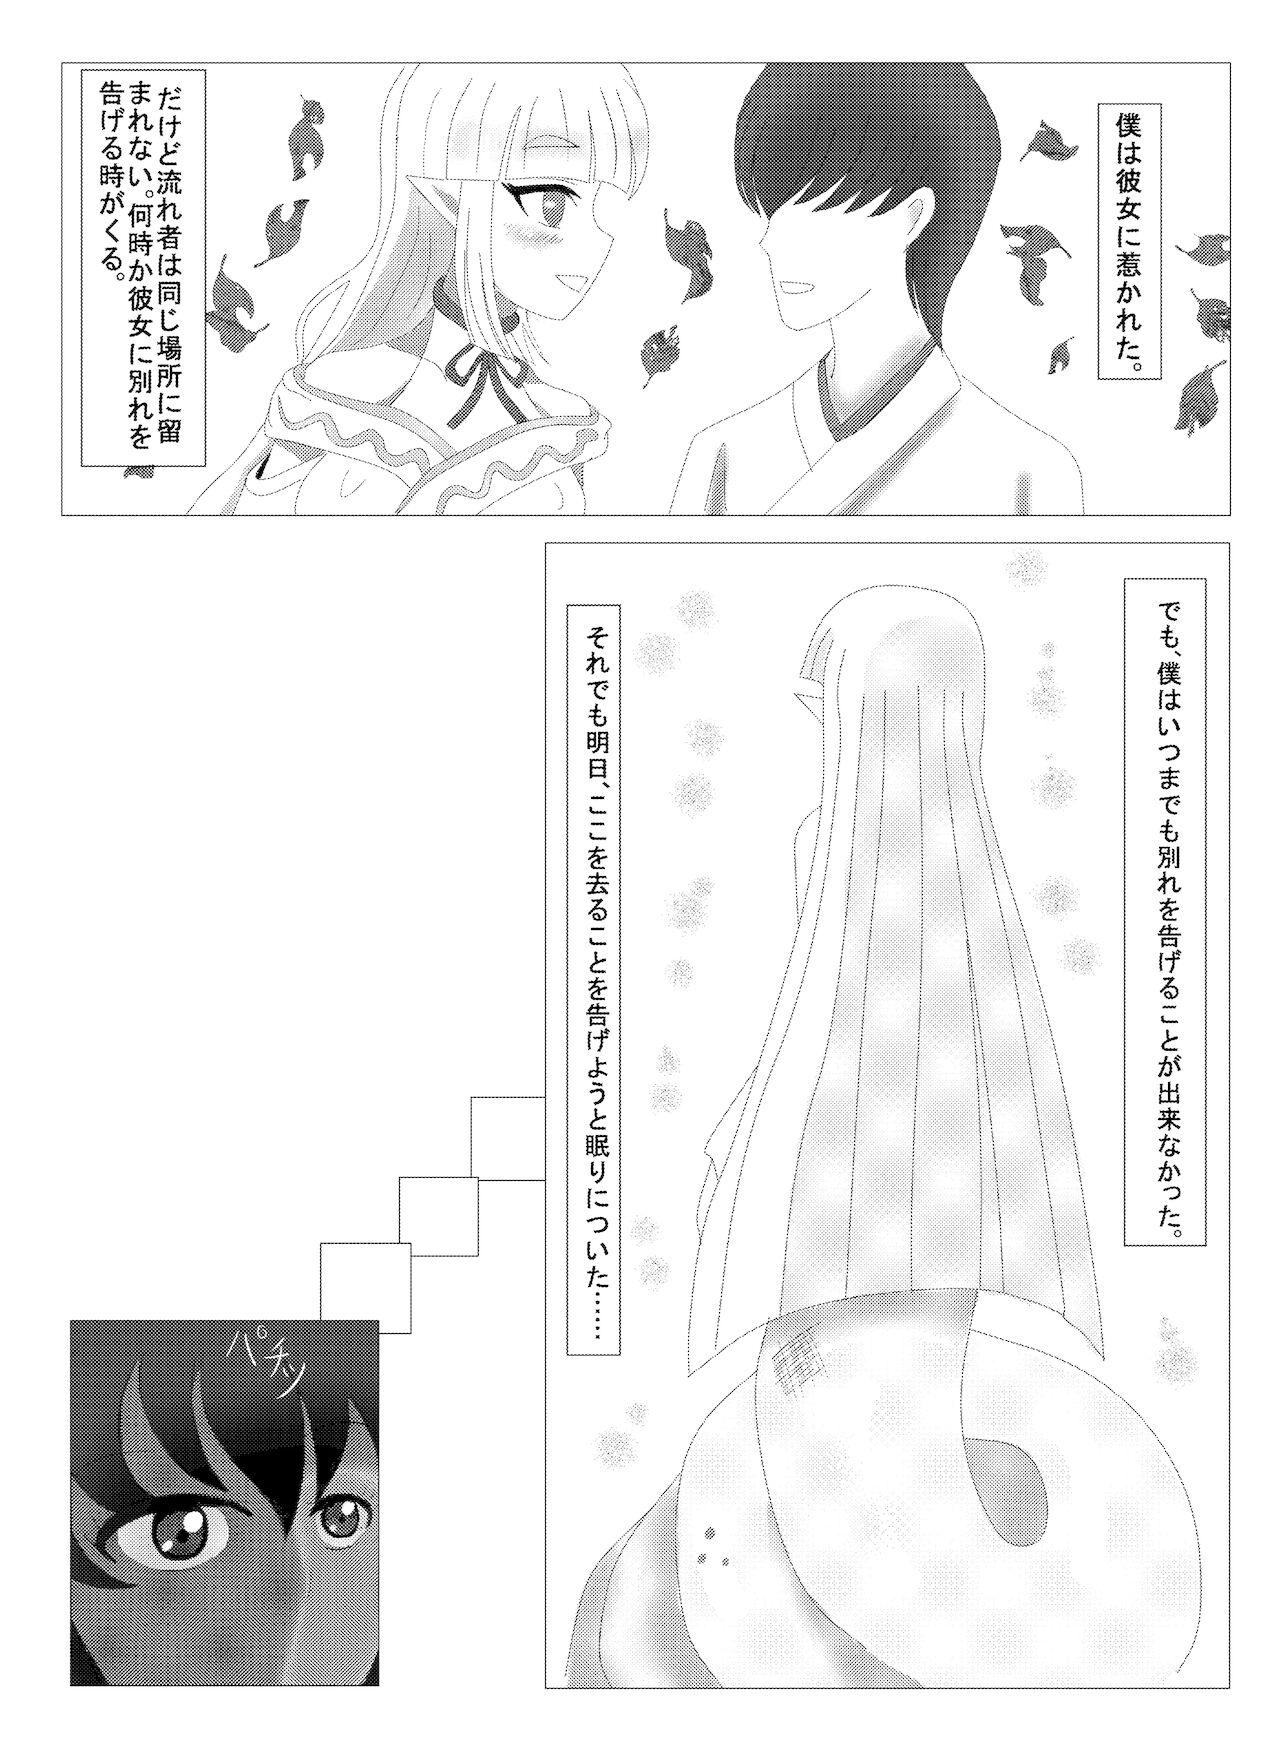 Monster Girl Love Story: "Mysterious Shirohebi" 4